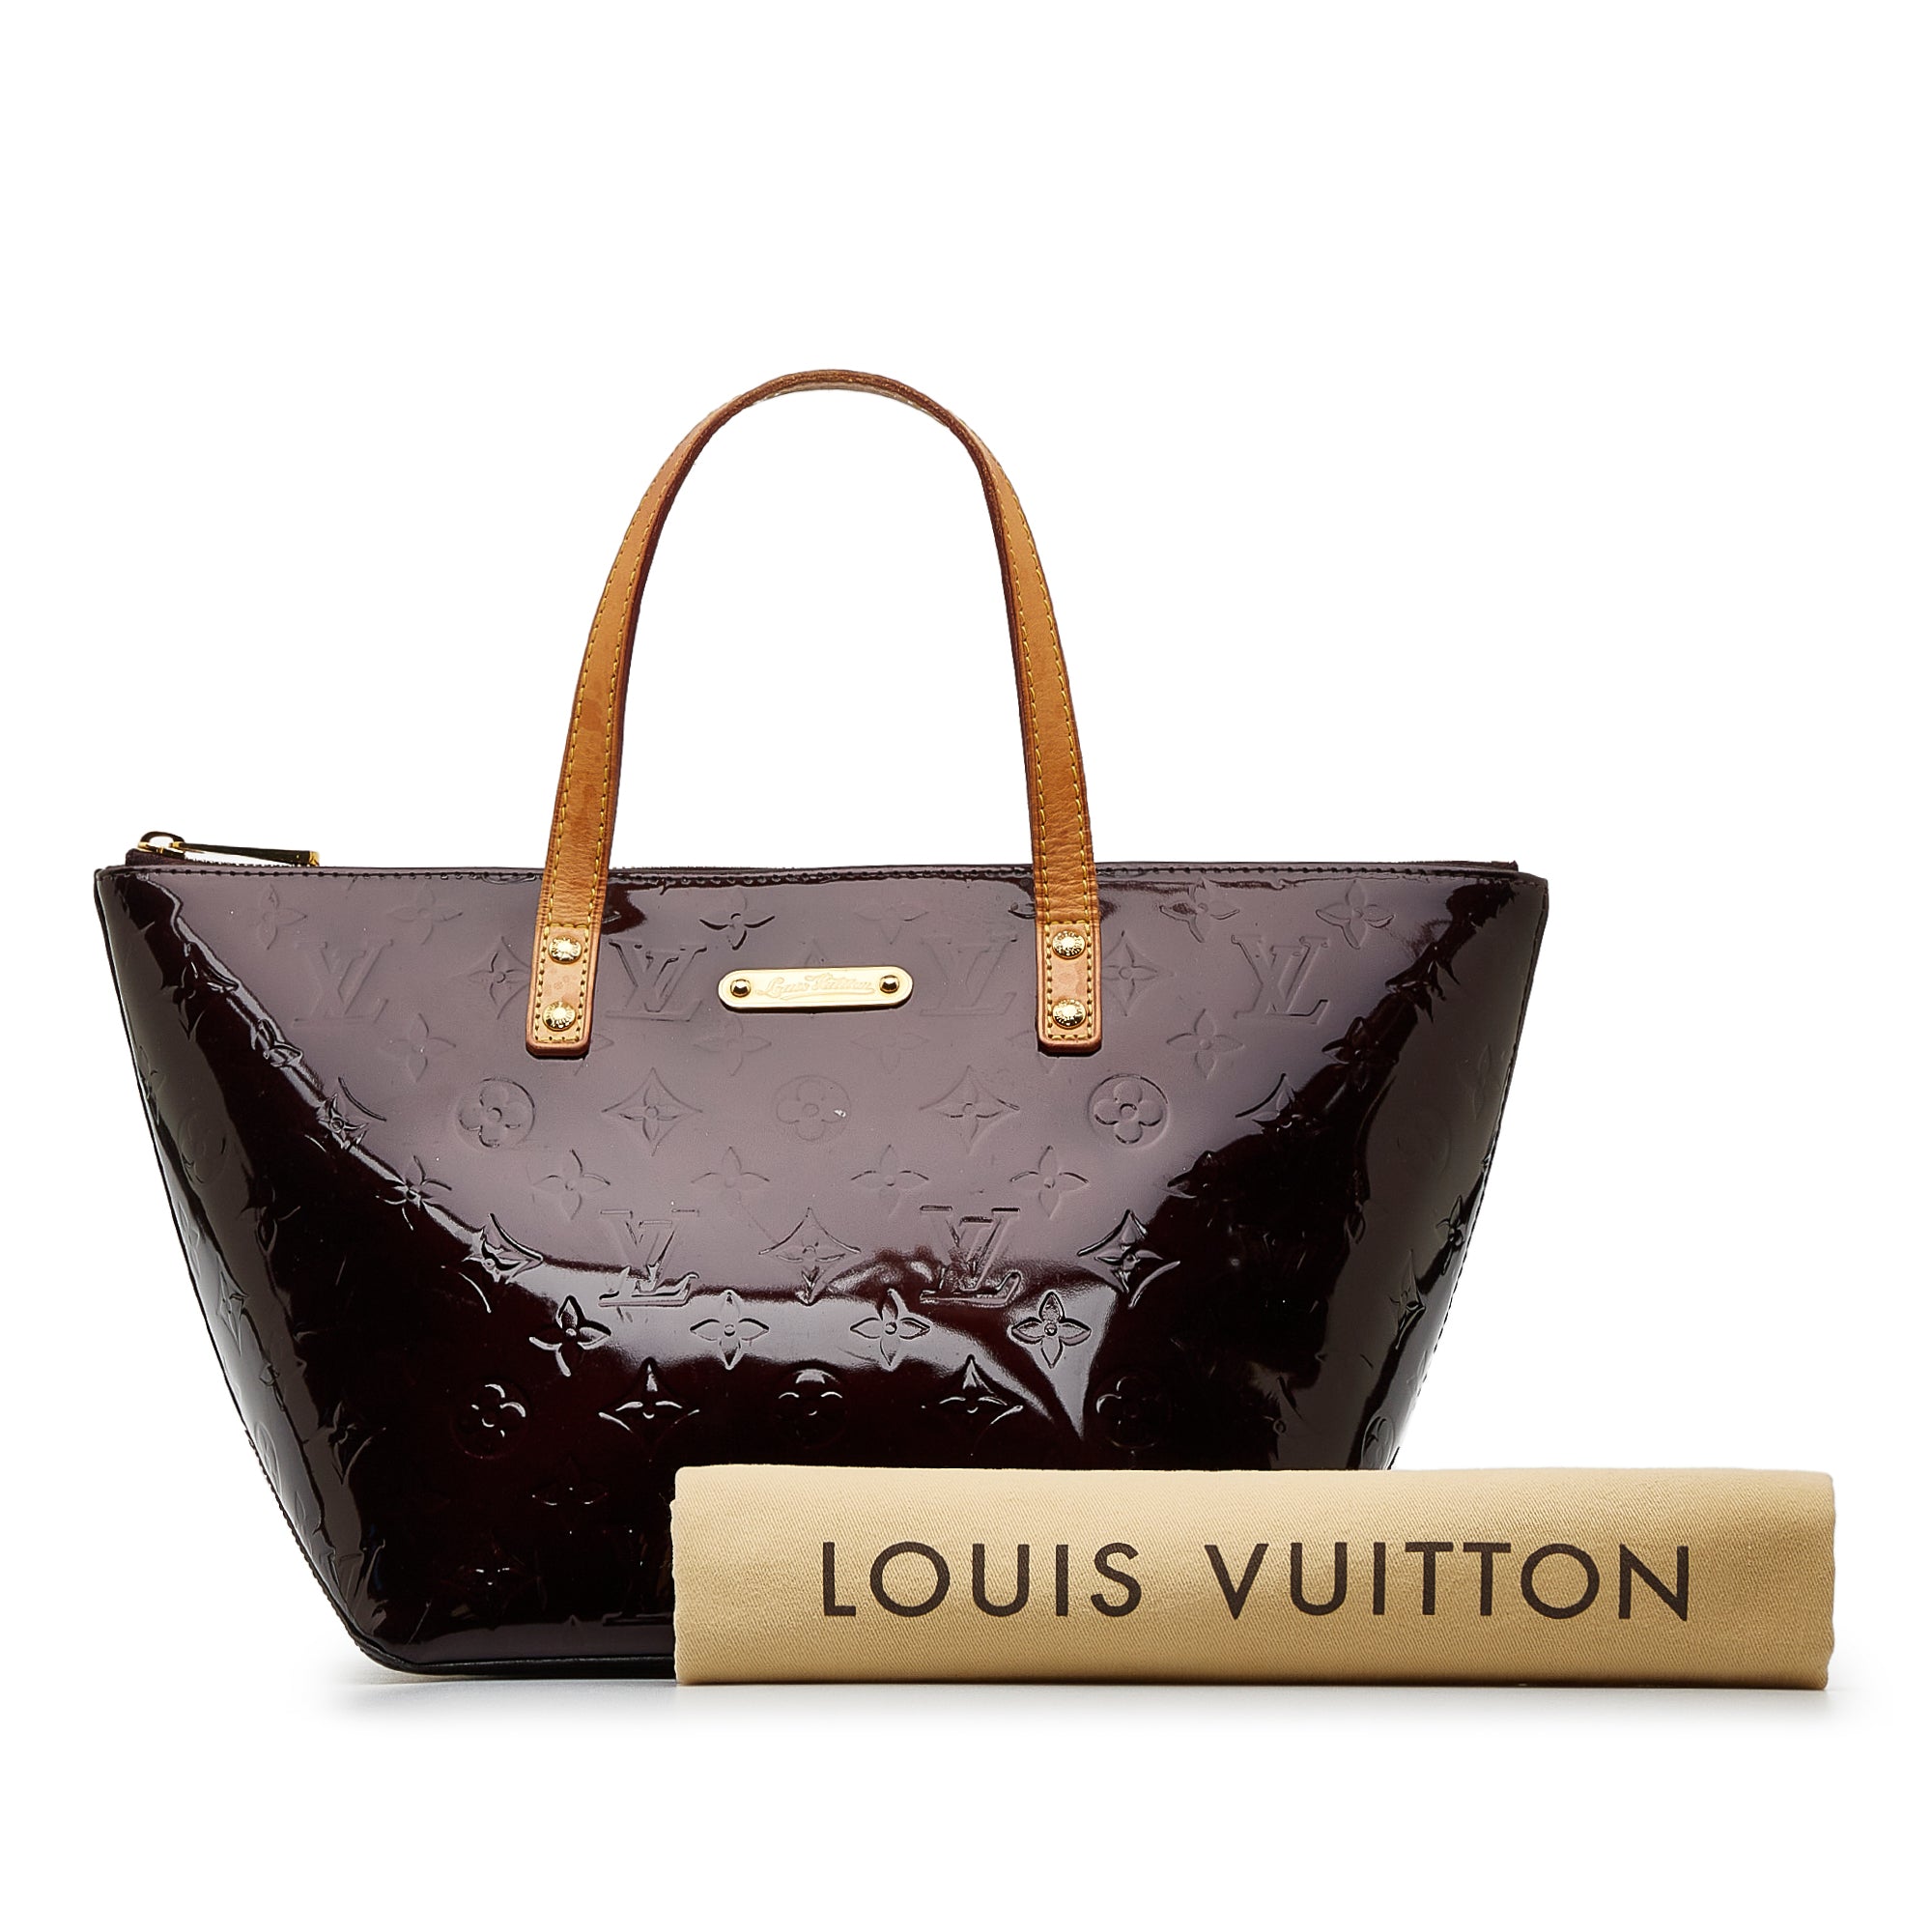 Louis Vuitton Louis Vuitton Bellevue PM Red Vernis Leather Handbag